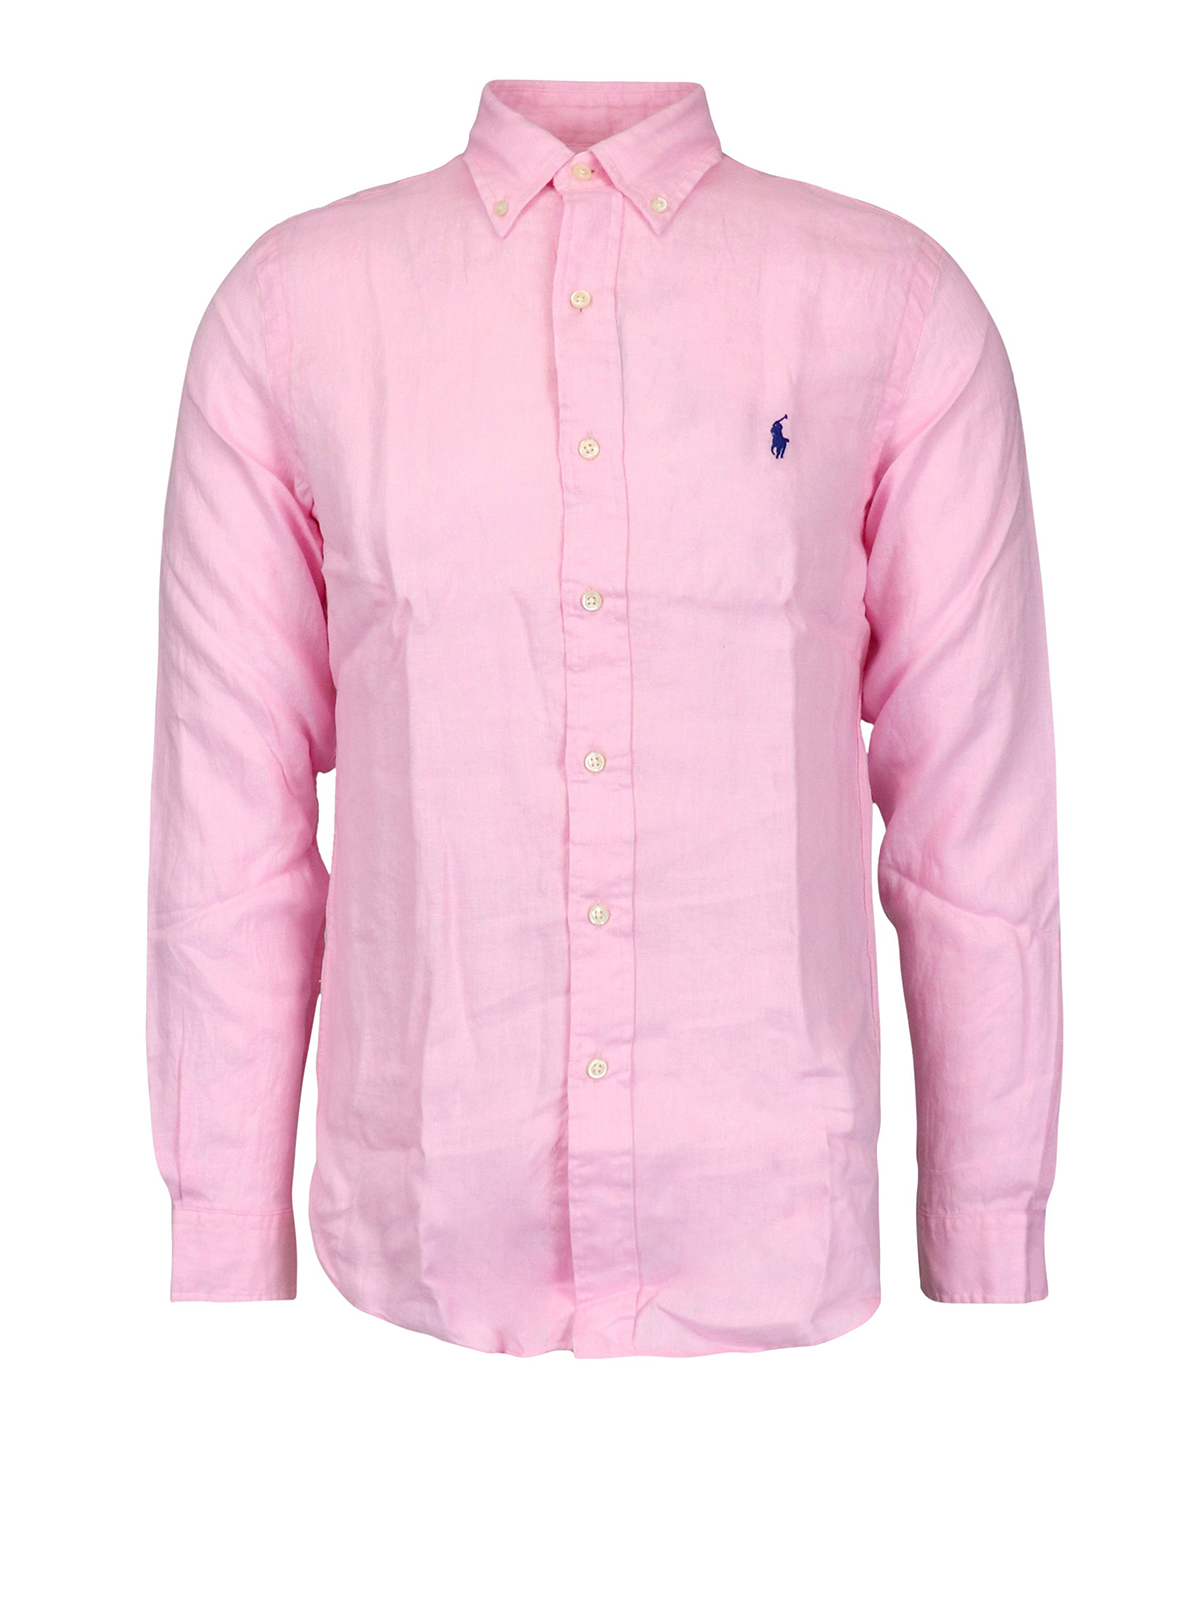 Shirts Polo Ralph Lauren - Pink linen shirt - 710794141006 | iKRIX.com